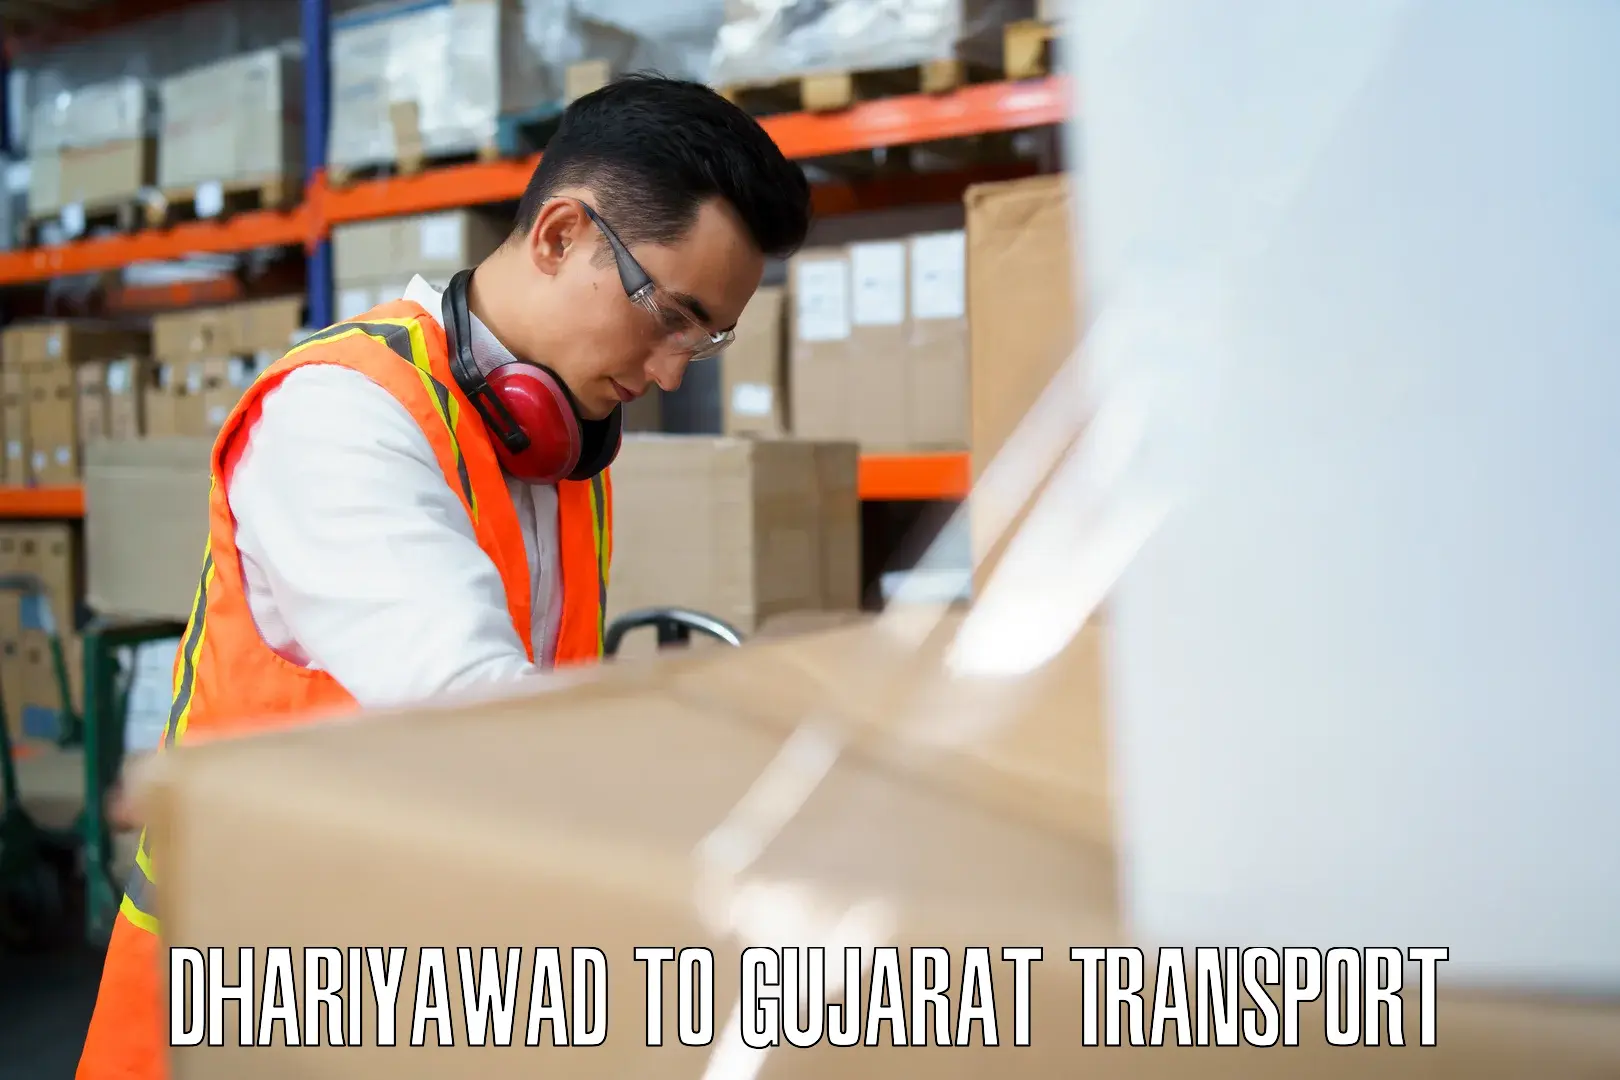 Furniture transport service Dhariyawad to Gujarat